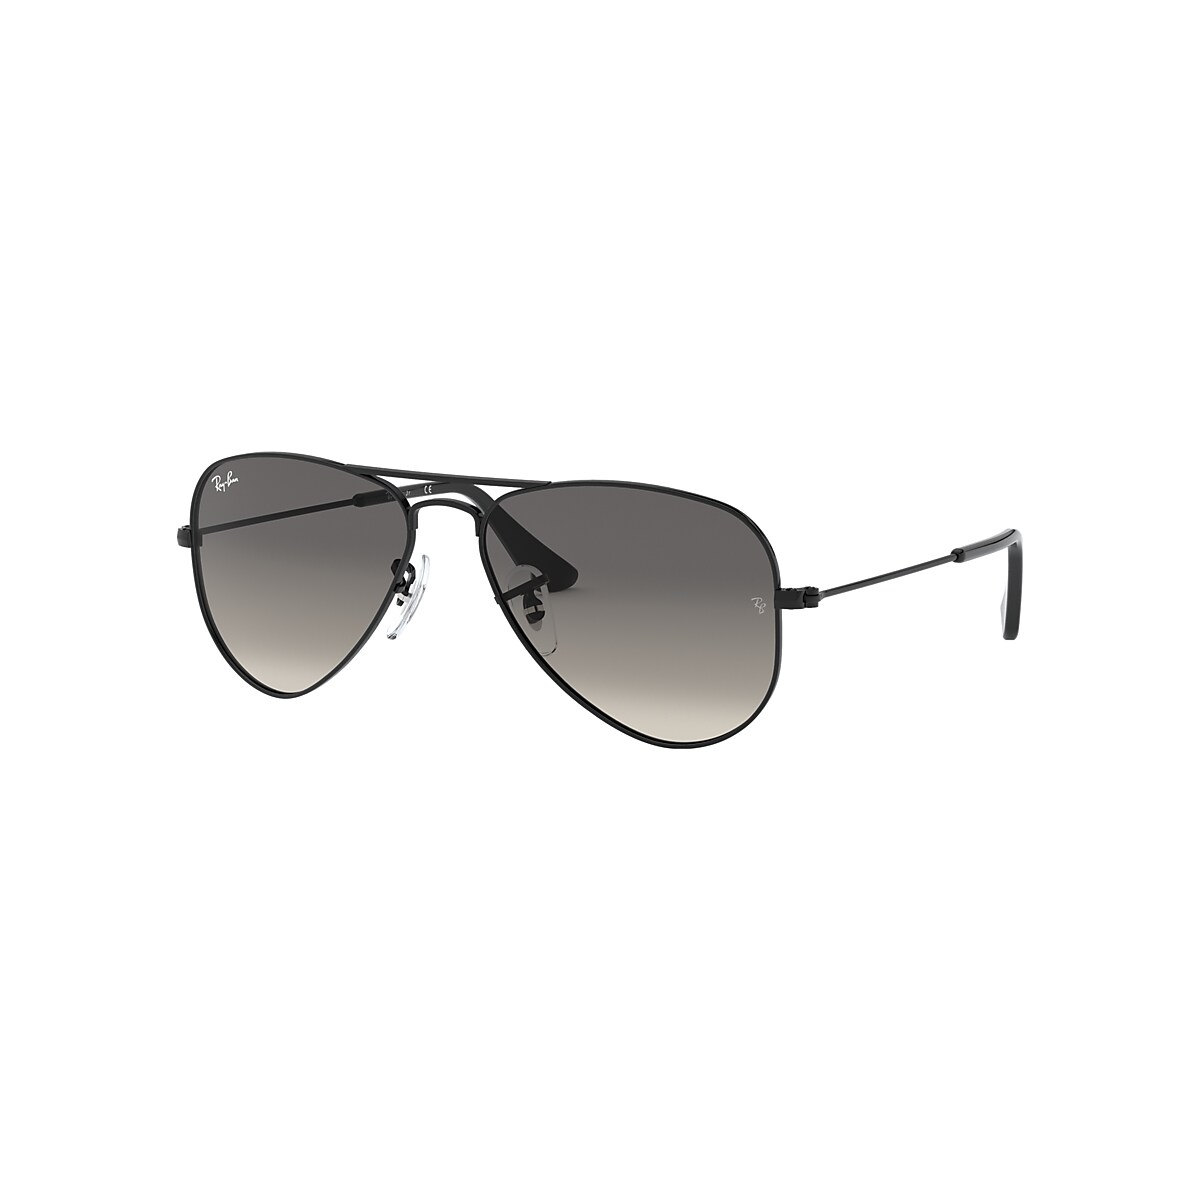 Overvloedig Wardianzaak ontvangen Aviator Kids Sunglasses in Black and Grey | Ray-Ban®